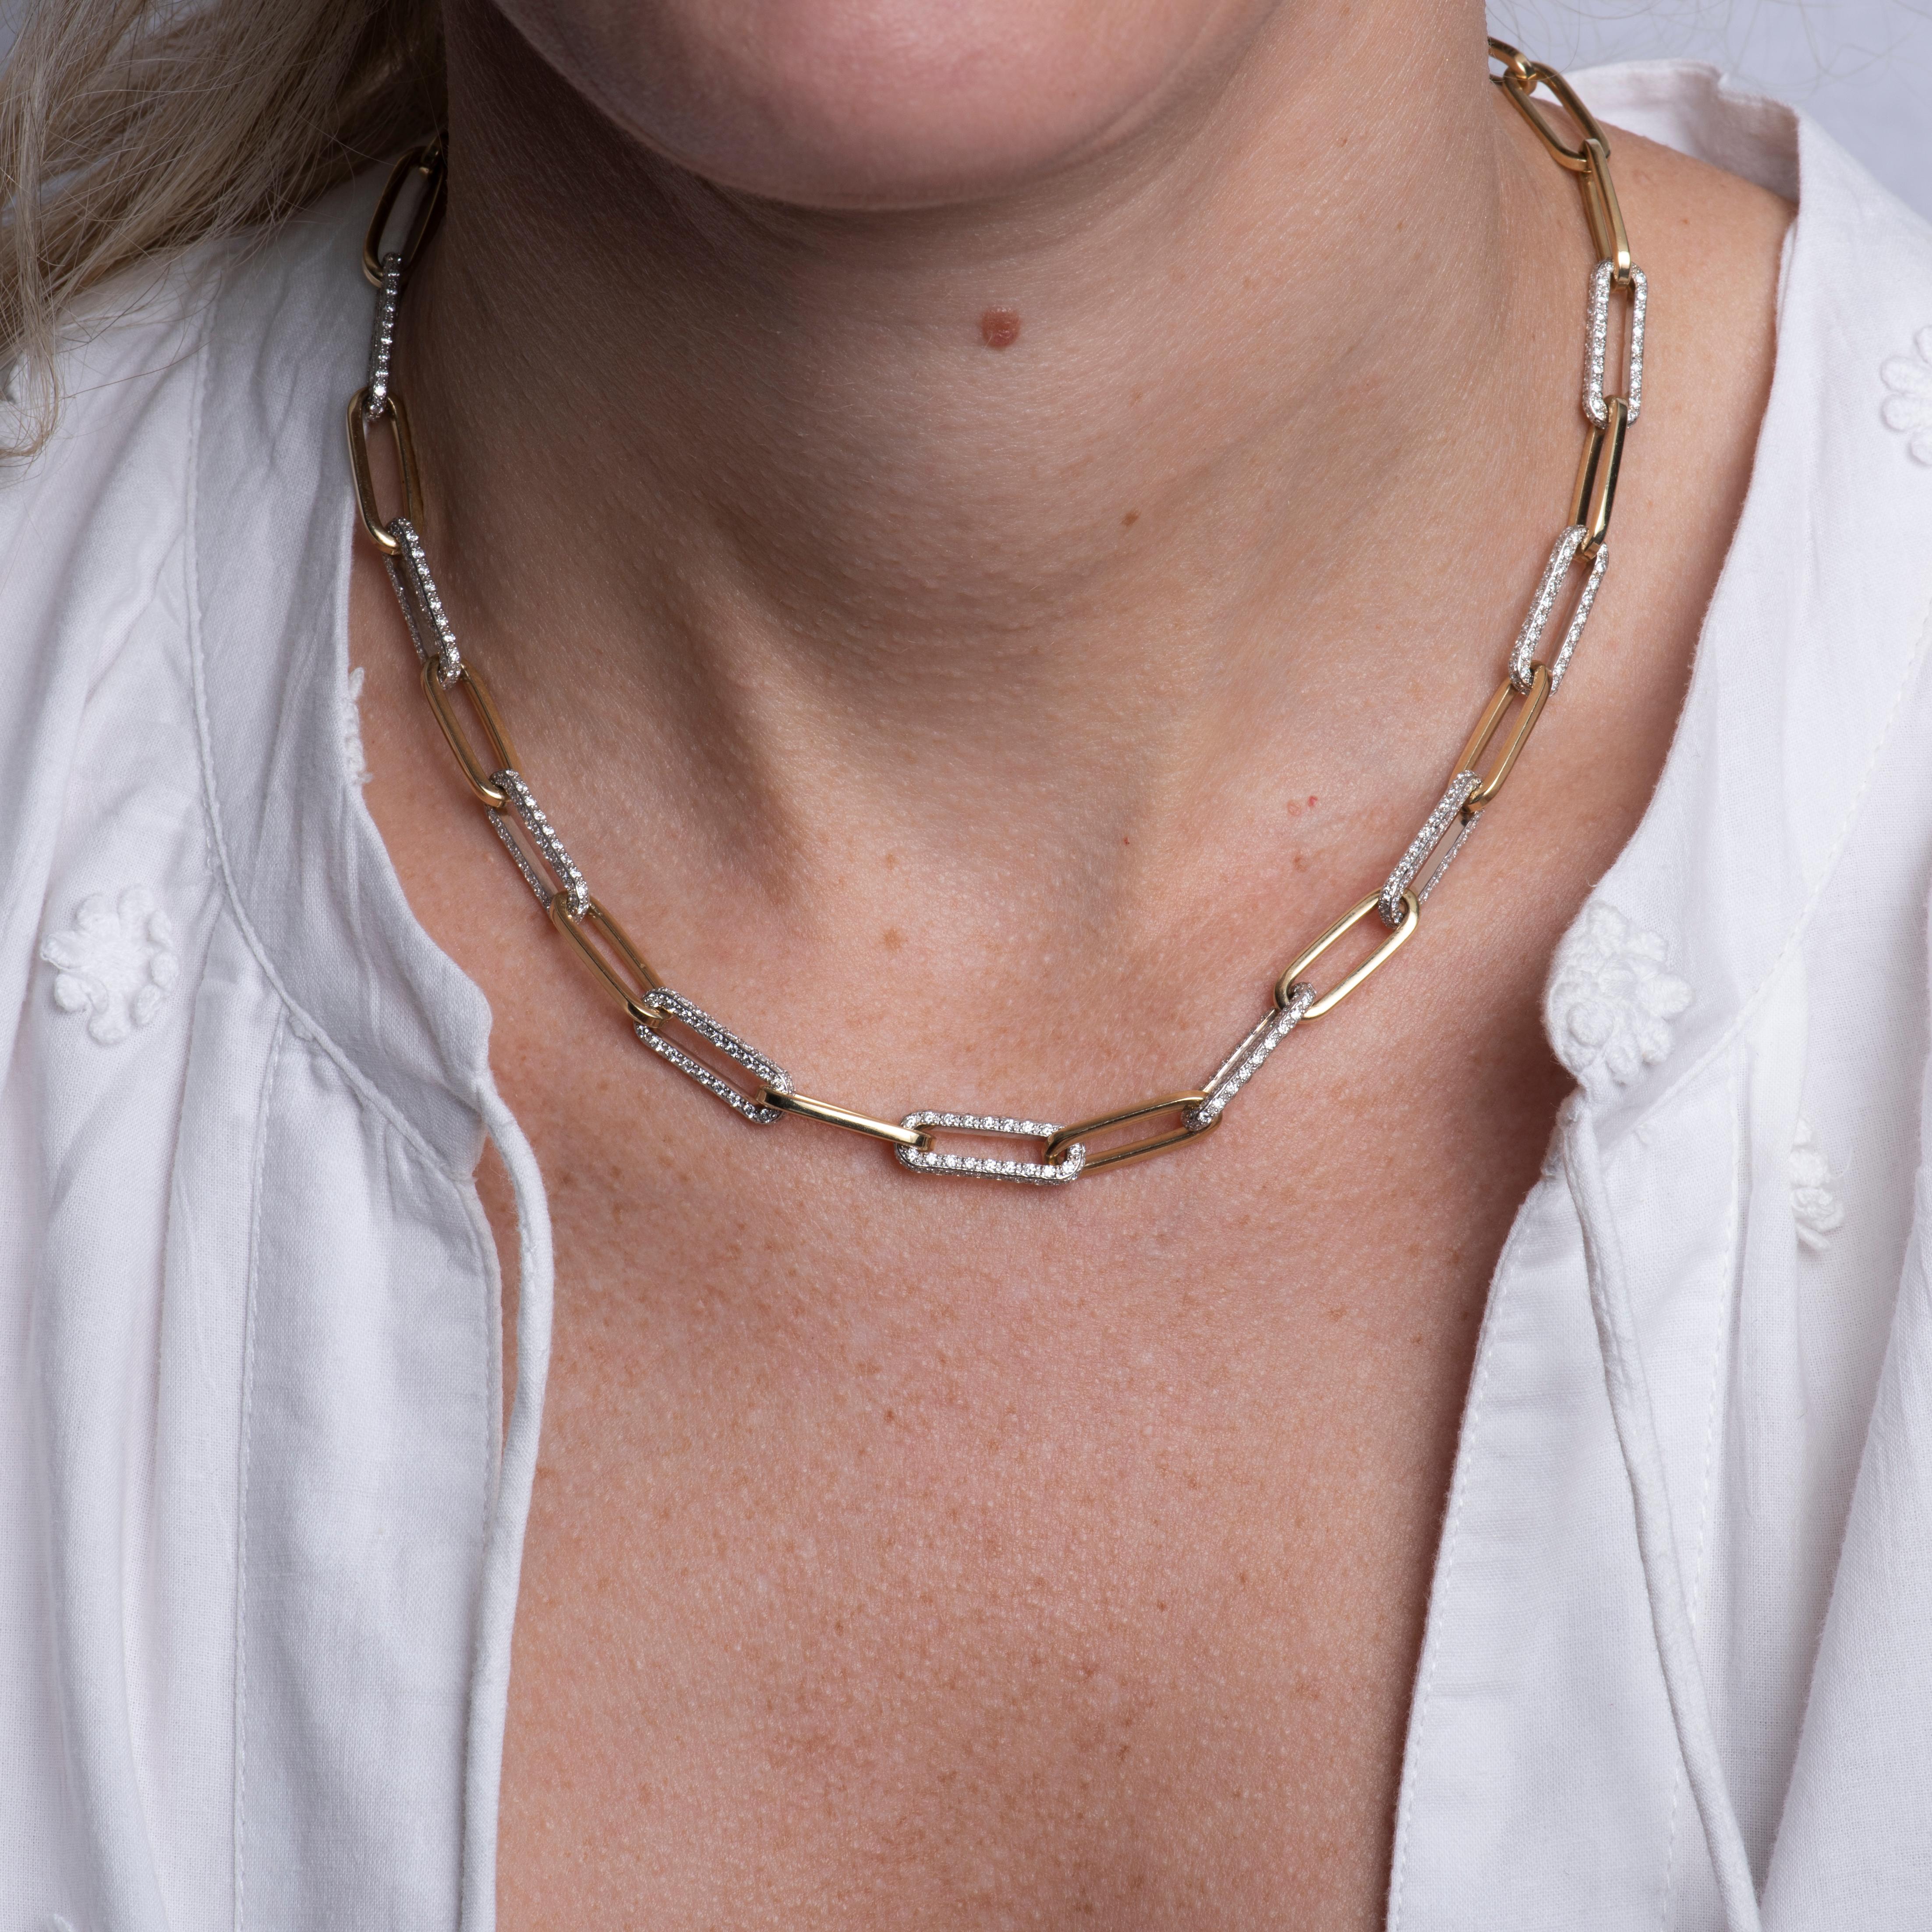 Diese Büroklammer-Halskette besteht aus Gliedern mit 5,02 Karat Gesamtgewicht in runden natürlichen Diamanten, die in 14-karätigem Gelbgold gefasst sind und sich mit einfachen Goldgliedern abwechseln. Tragen Sie sie allein oder kombinieren Sie sie